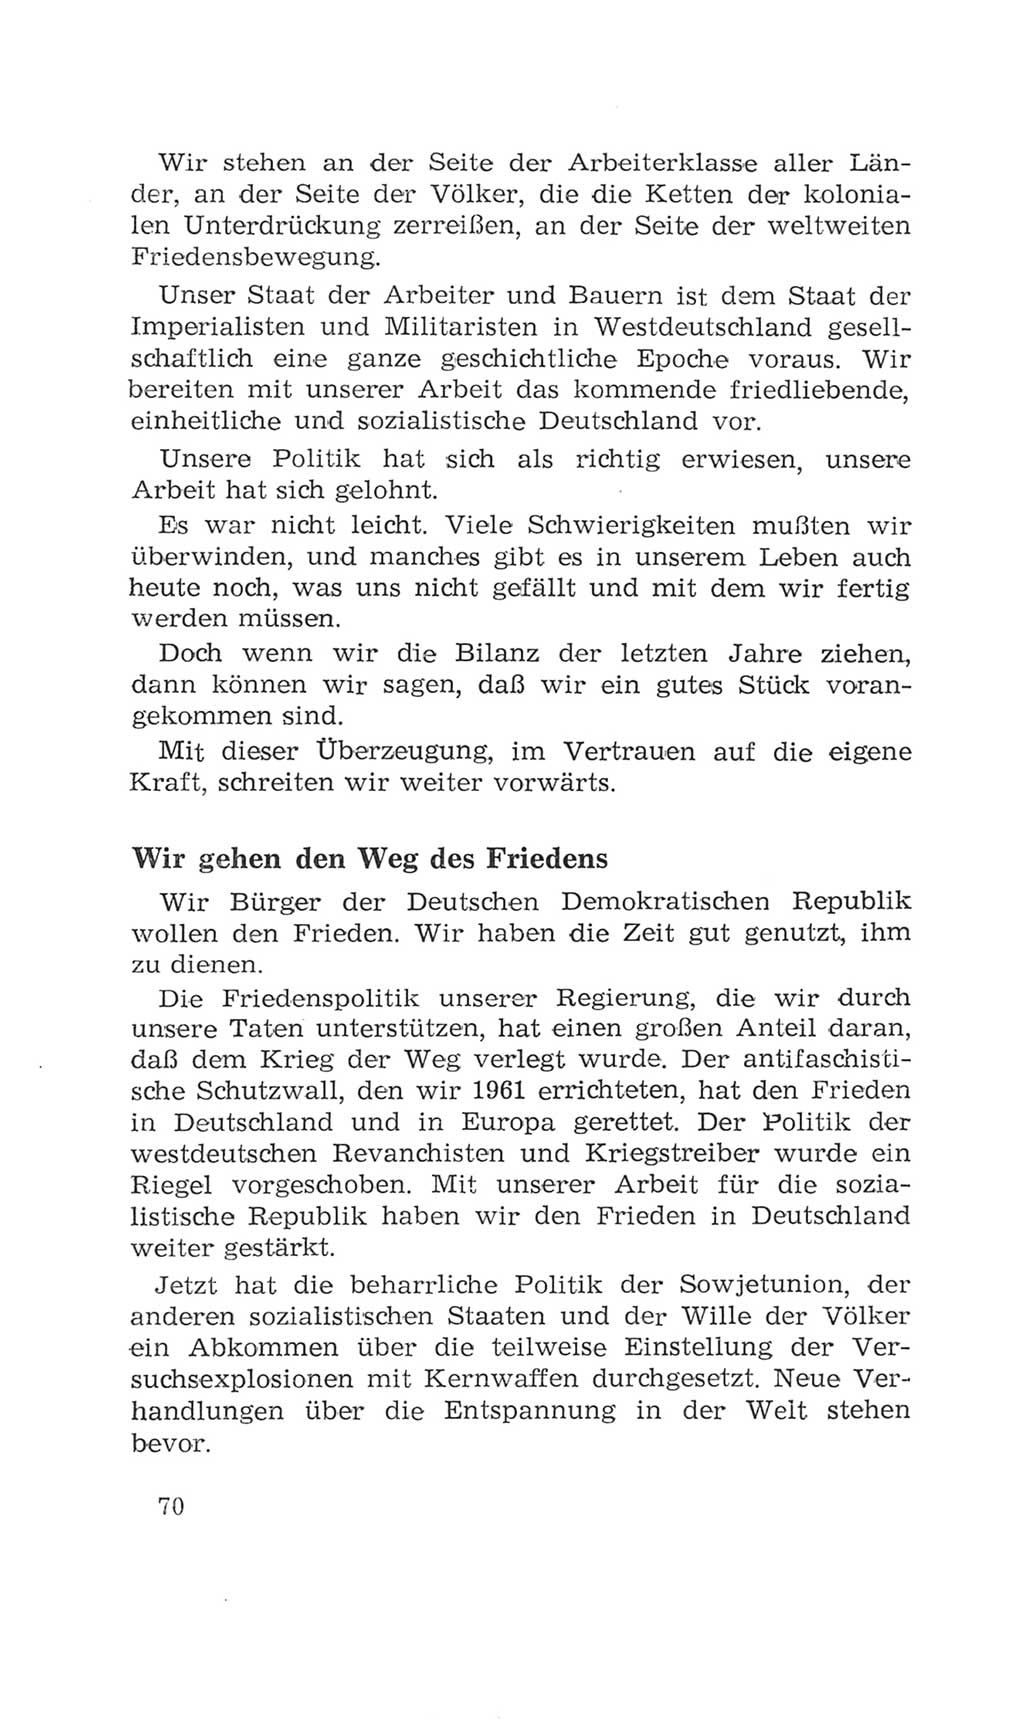 Volkskammer (VK) der Deutschen Demokratischen Republik (DDR), 4. Wahlperiode 1963-1967, Seite 70 (VK. DDR 4. WP. 1963-1967, S. 70)